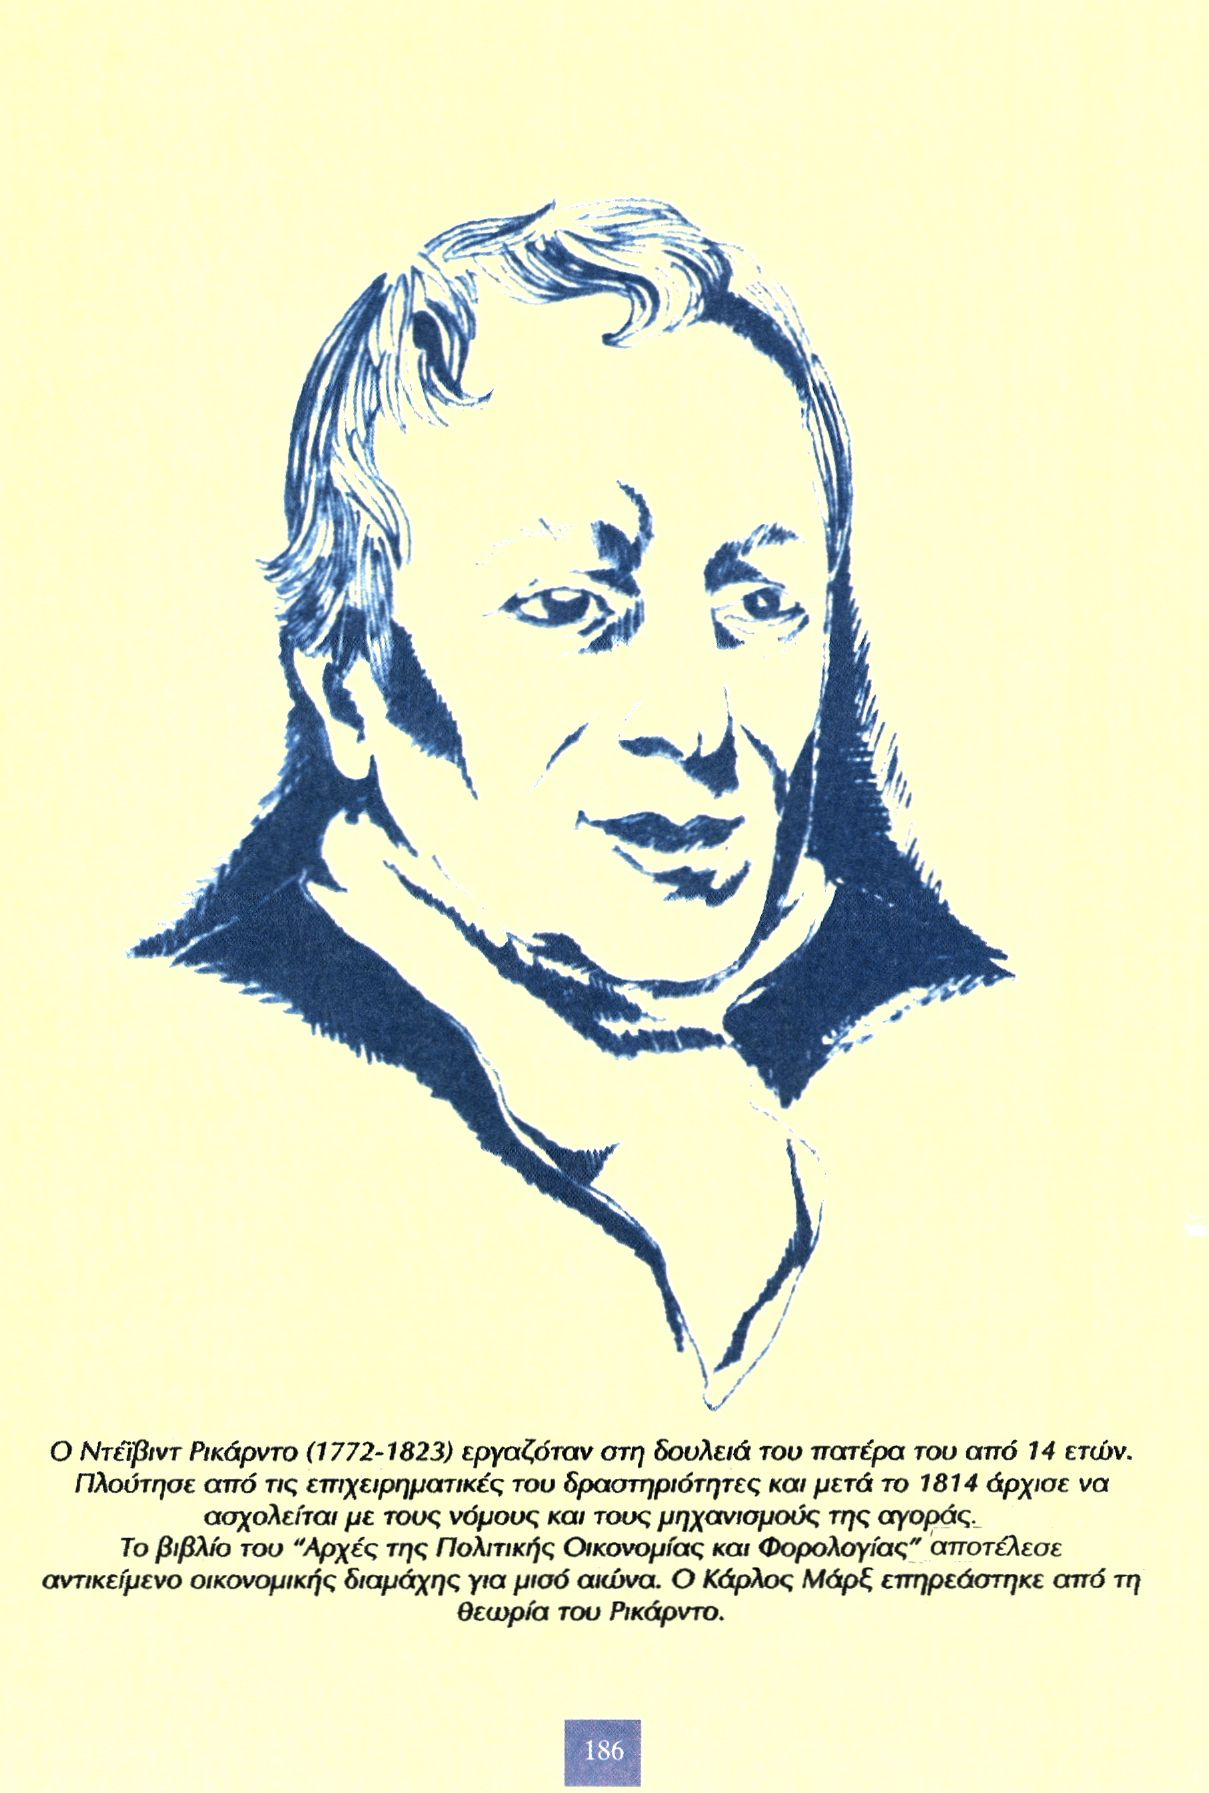 Ο Ντέϊβιντ Ρικάρντο (1772-1823) εργαζόταν στη δουλειά του πατέρα του από 14 ετών.